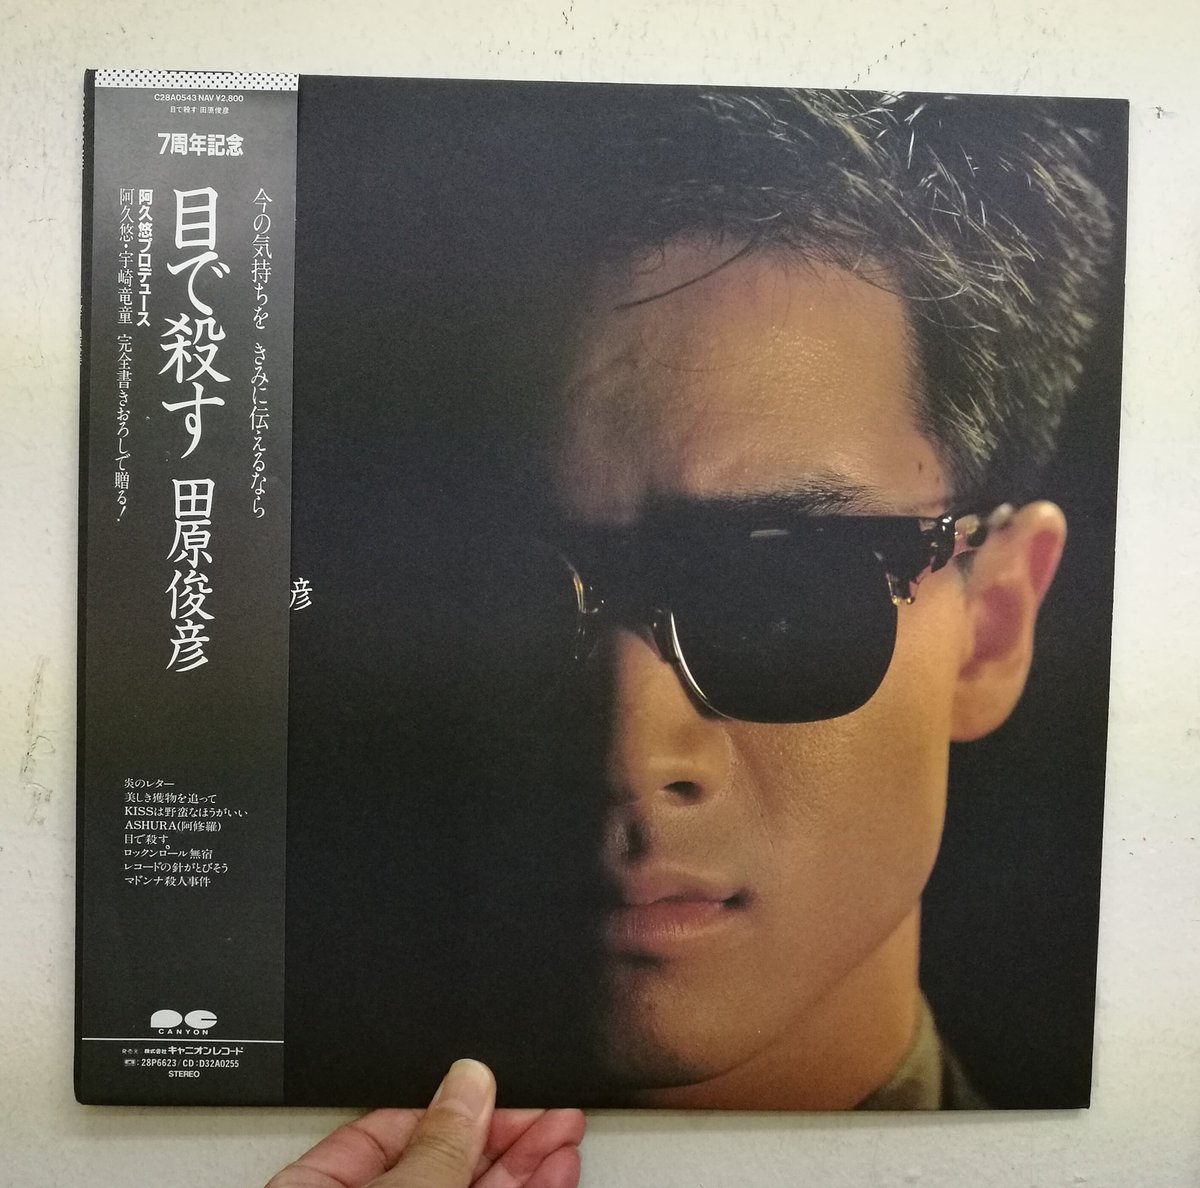 サウンドパック本店(中古レコード・CD) on Twitter: 